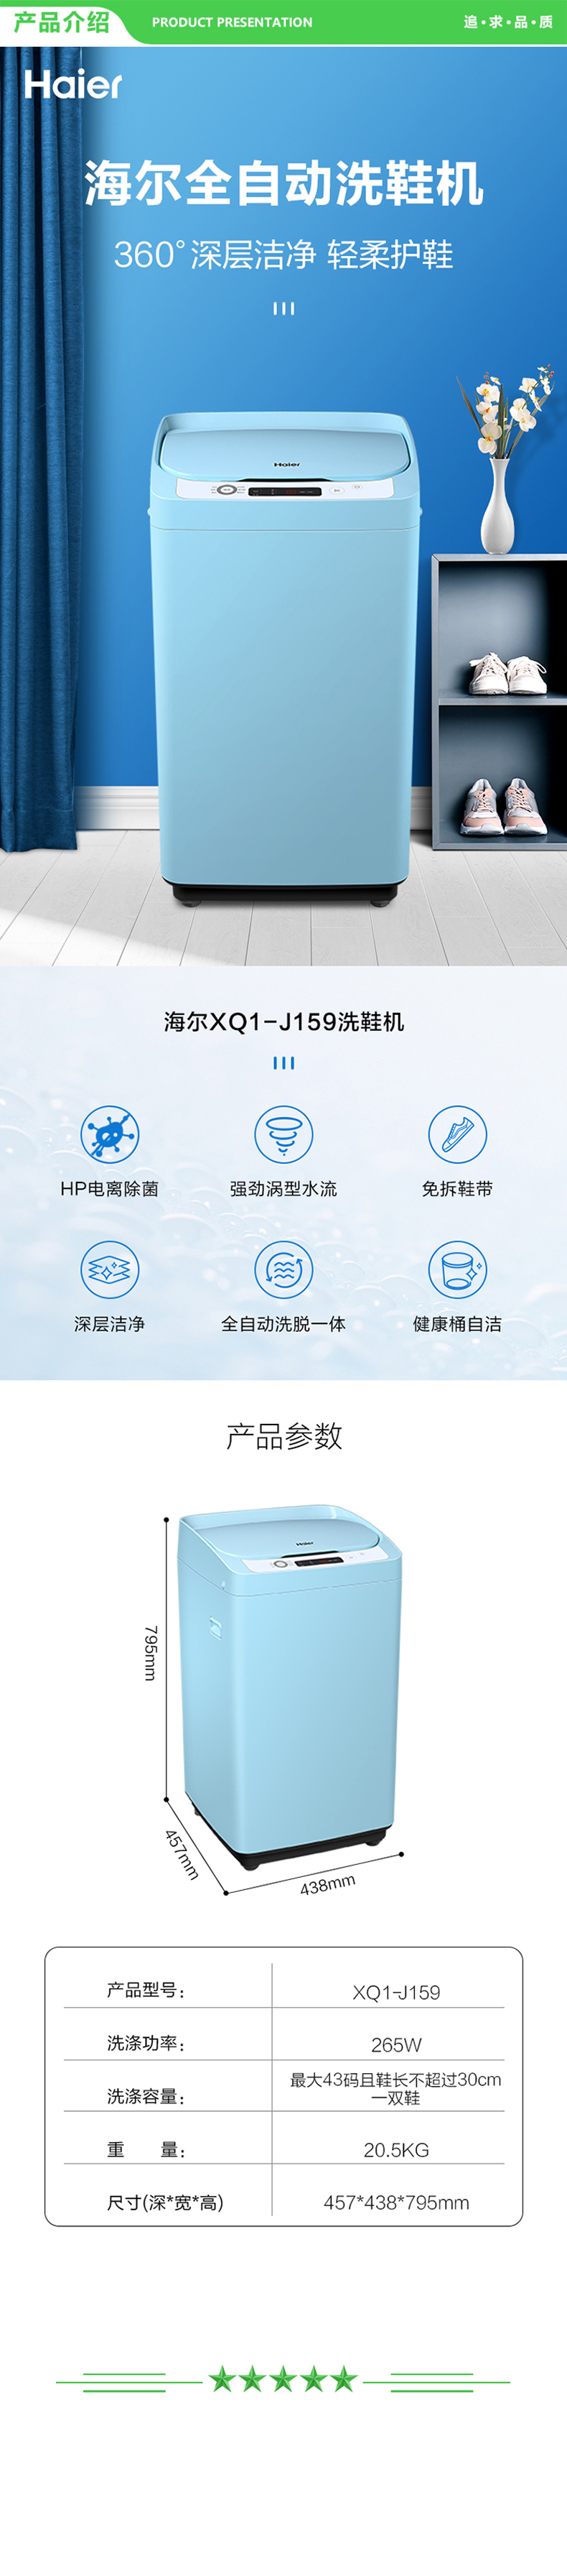 海尔 Haier XQ1-J159  多功能全自动波轮洗衣洗鞋机 以旧换新 健康桶自洁 升级球形360°呵护刷洗鞋面 .jpg